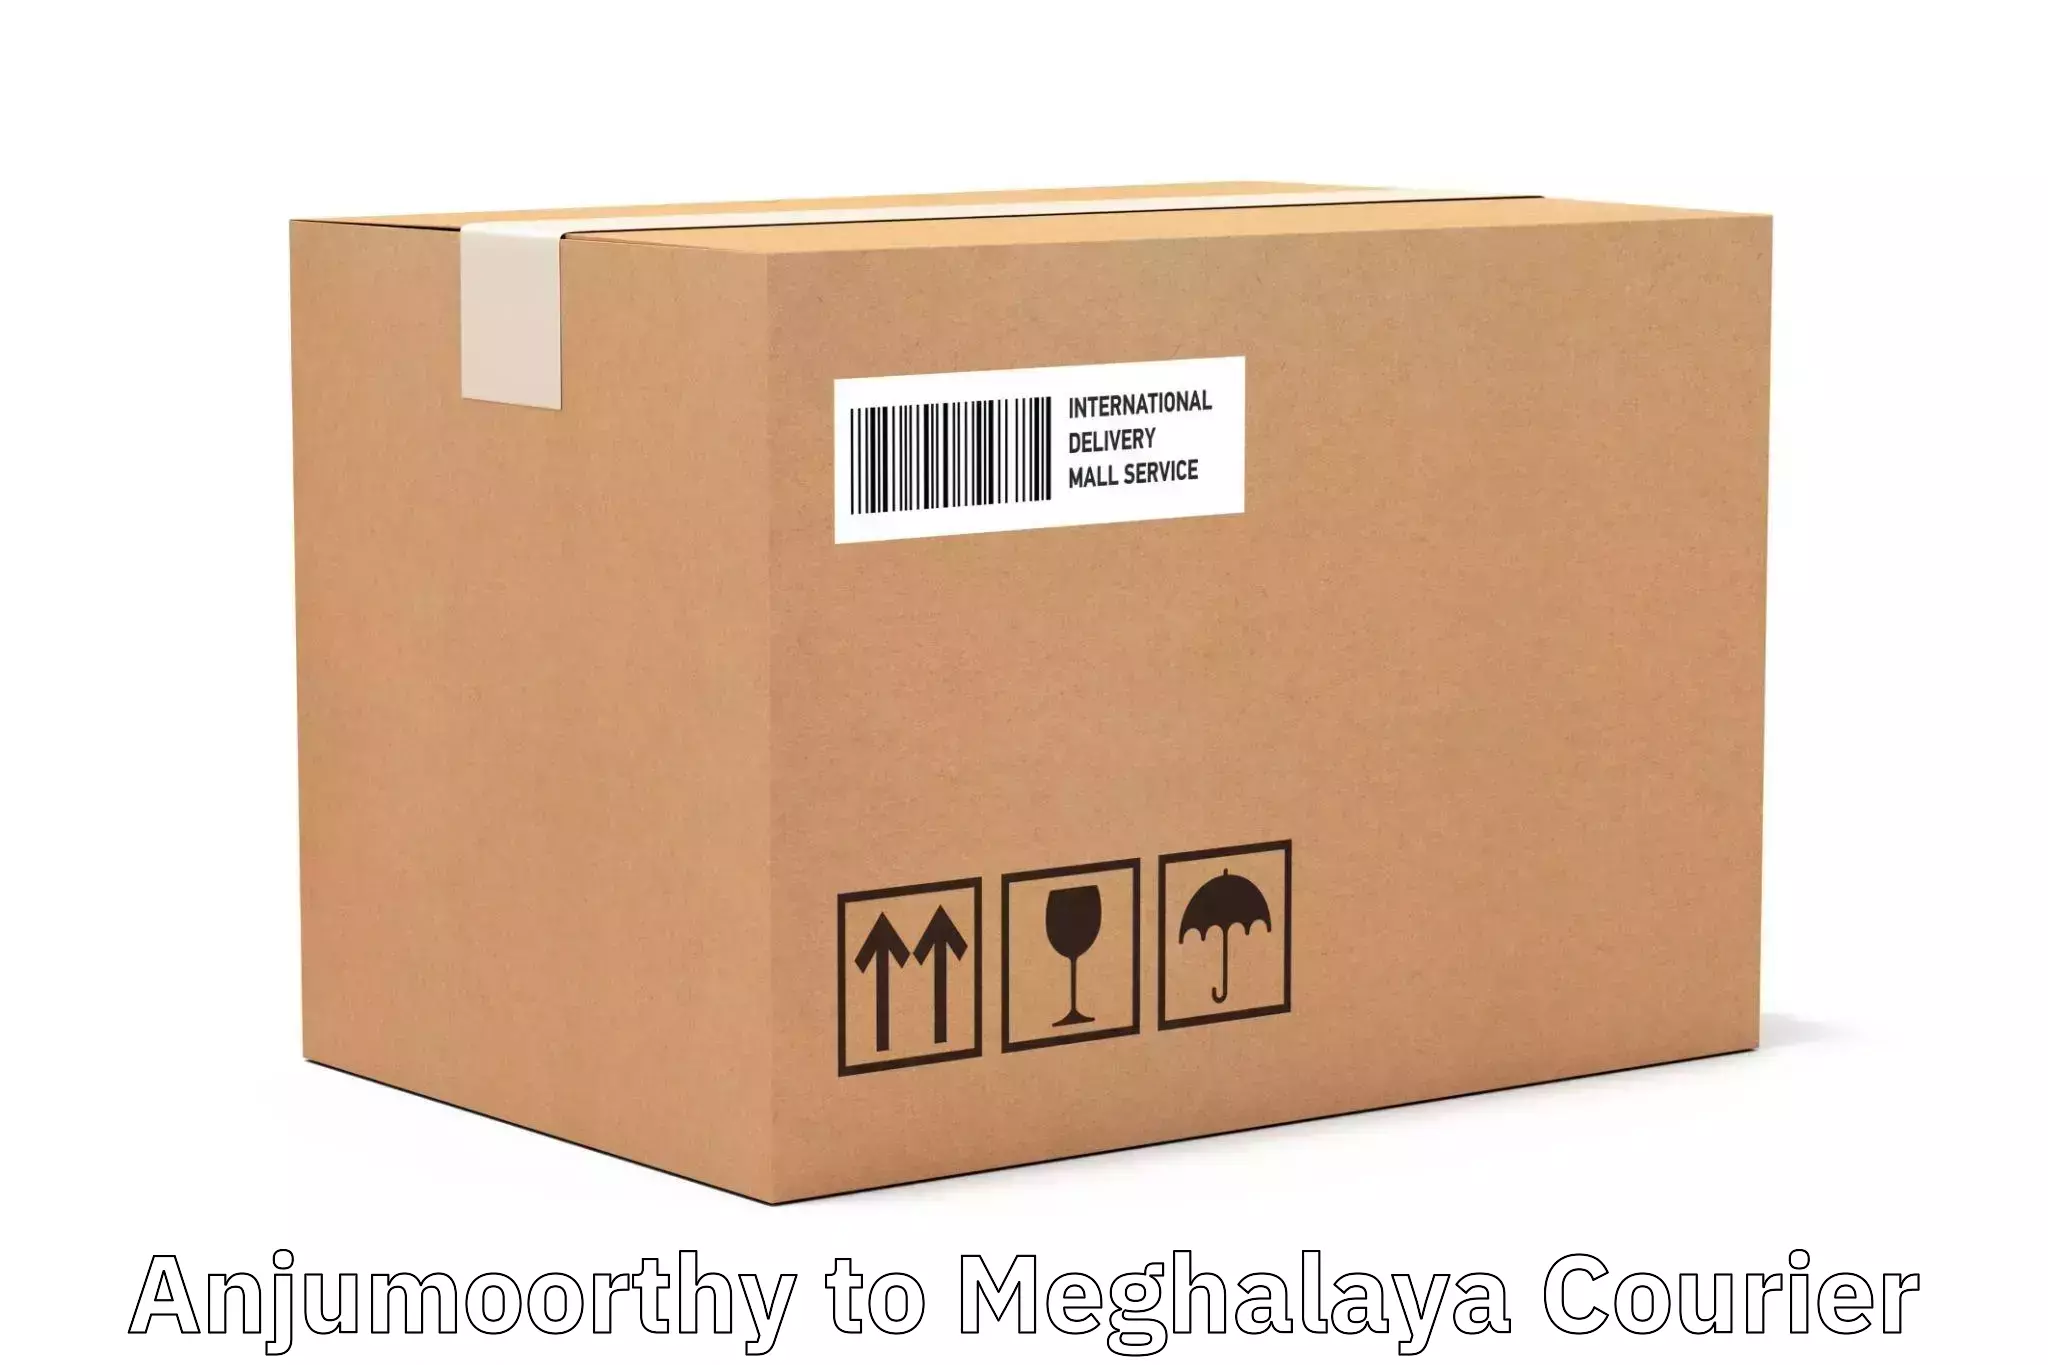 Cargo delivery service Anjumoorthy to Garobadha